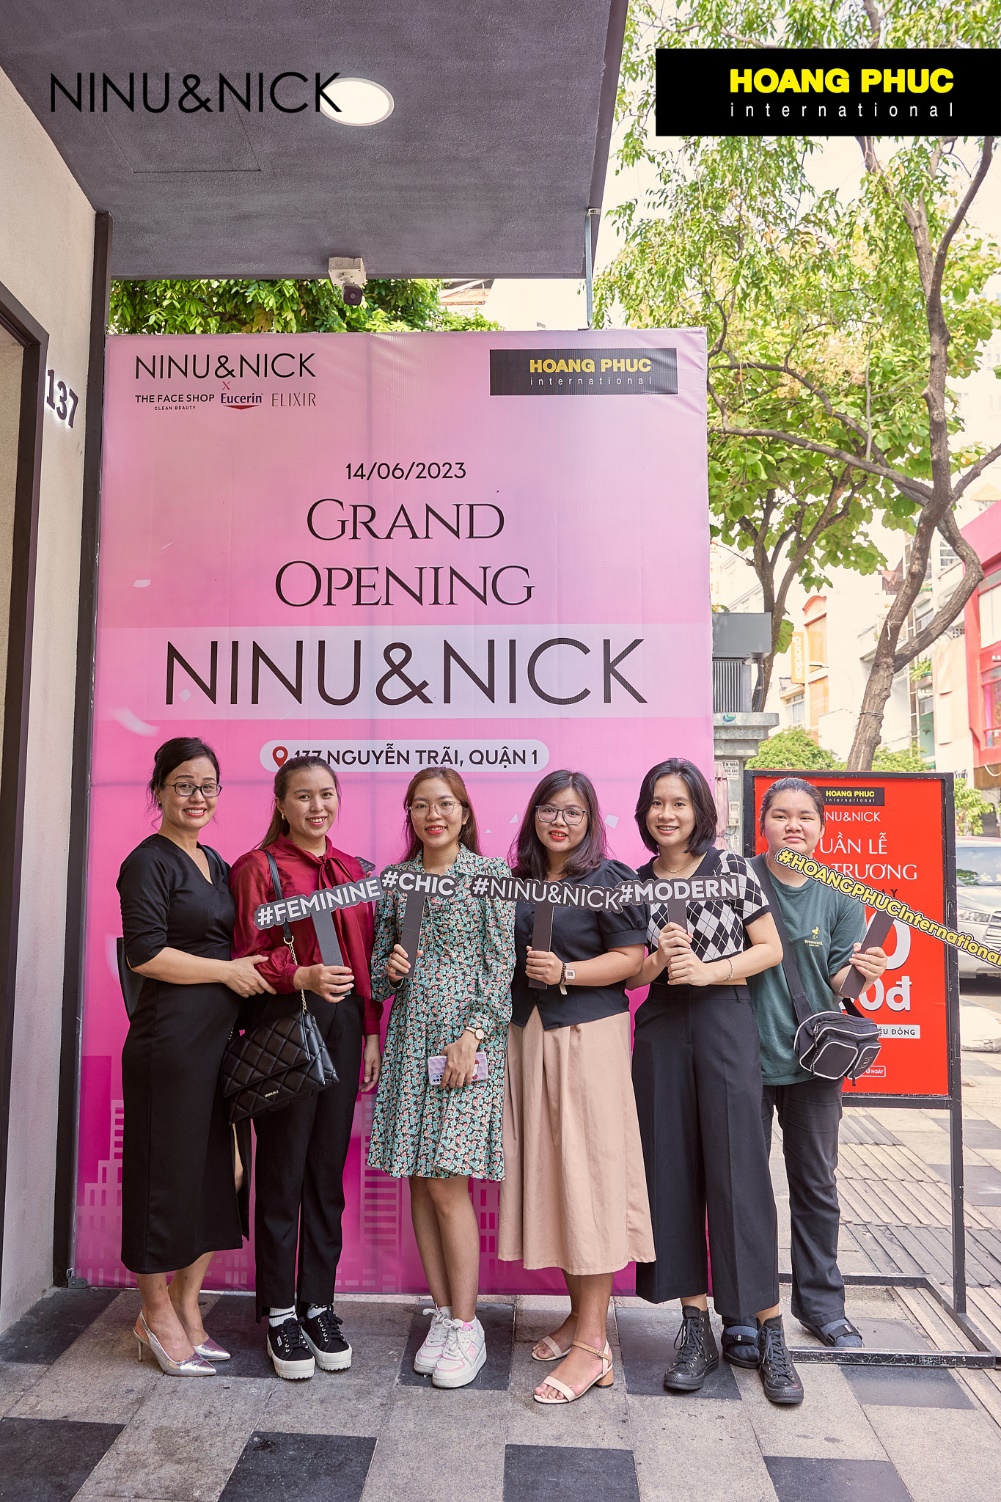 HOANG PHUC International khai trương cửa hàng NINU&NICK đầu tiên tại Việt Nam - Ảnh 2.